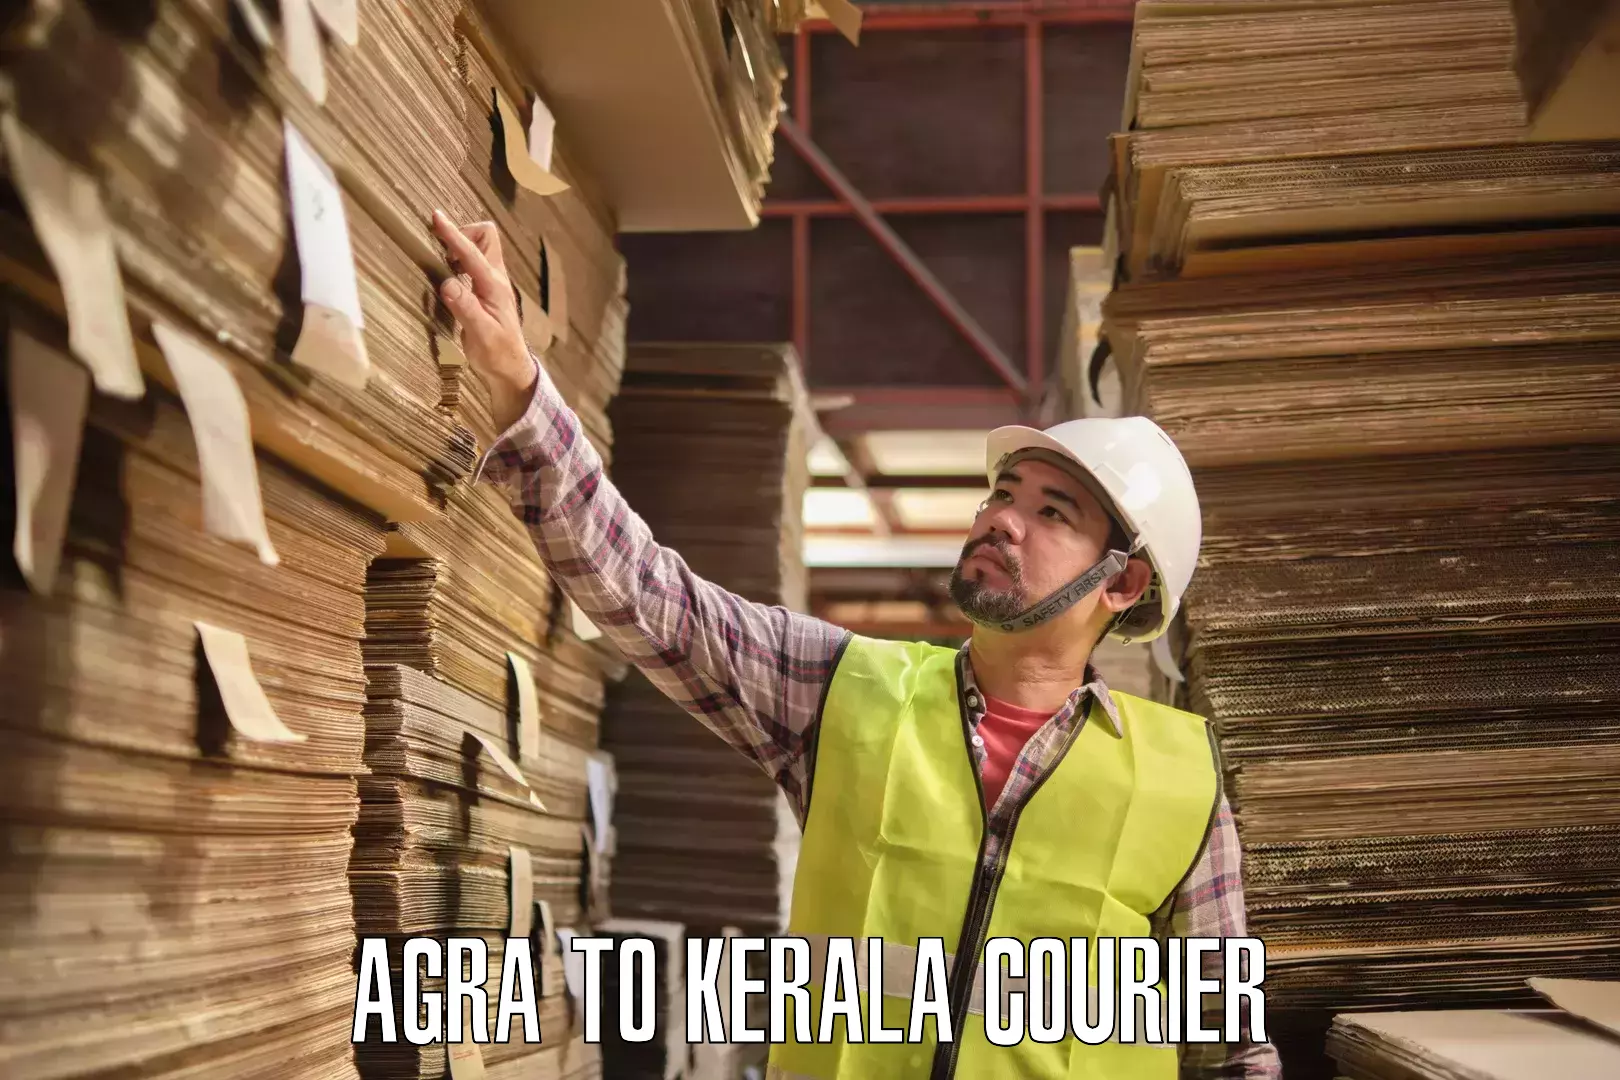 Easy access courier services Agra to Tiruvalla